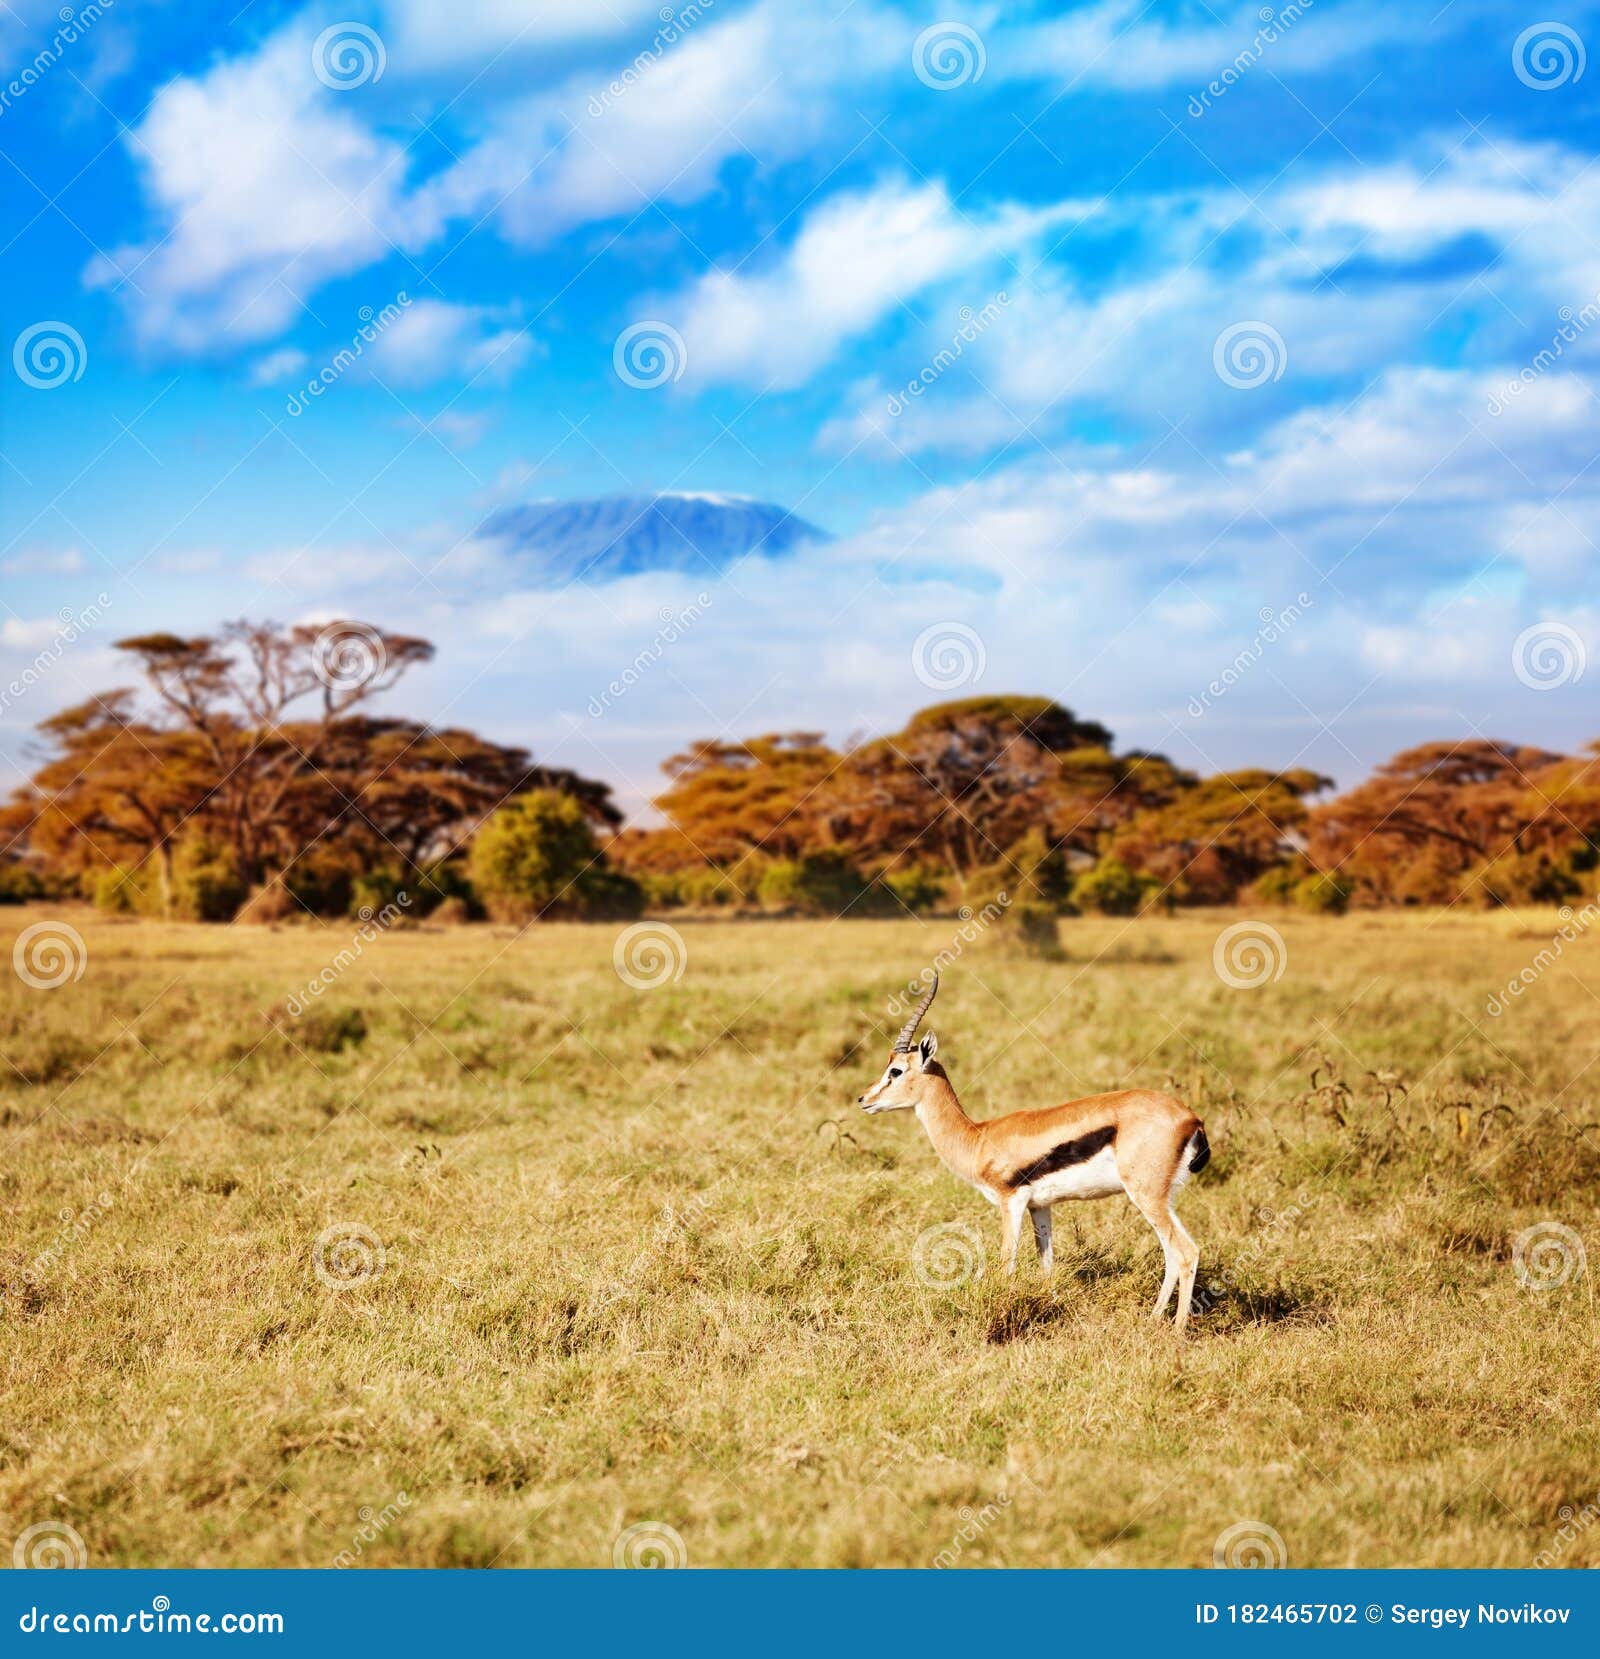 thomson gazelle in kenya over kilimanjaro mountain